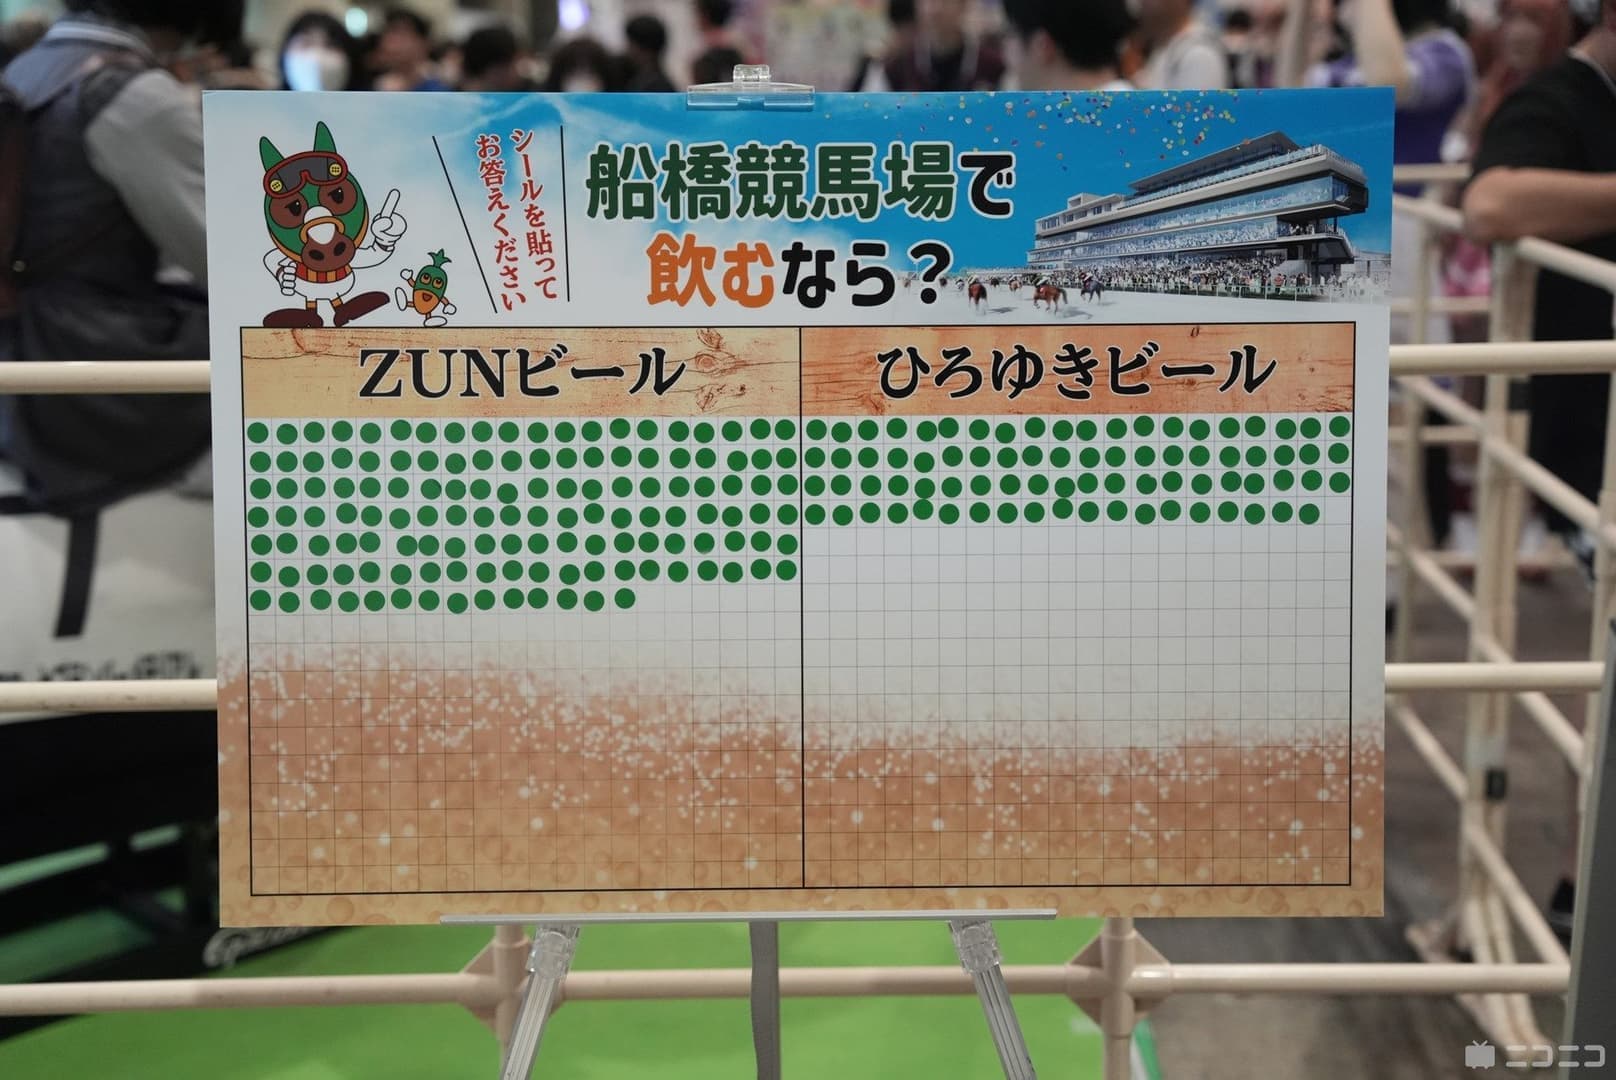 『東方Project』原作者ZUN氏プロデュース「超ZUNビール」が船橋競馬場で1日限定販売_001